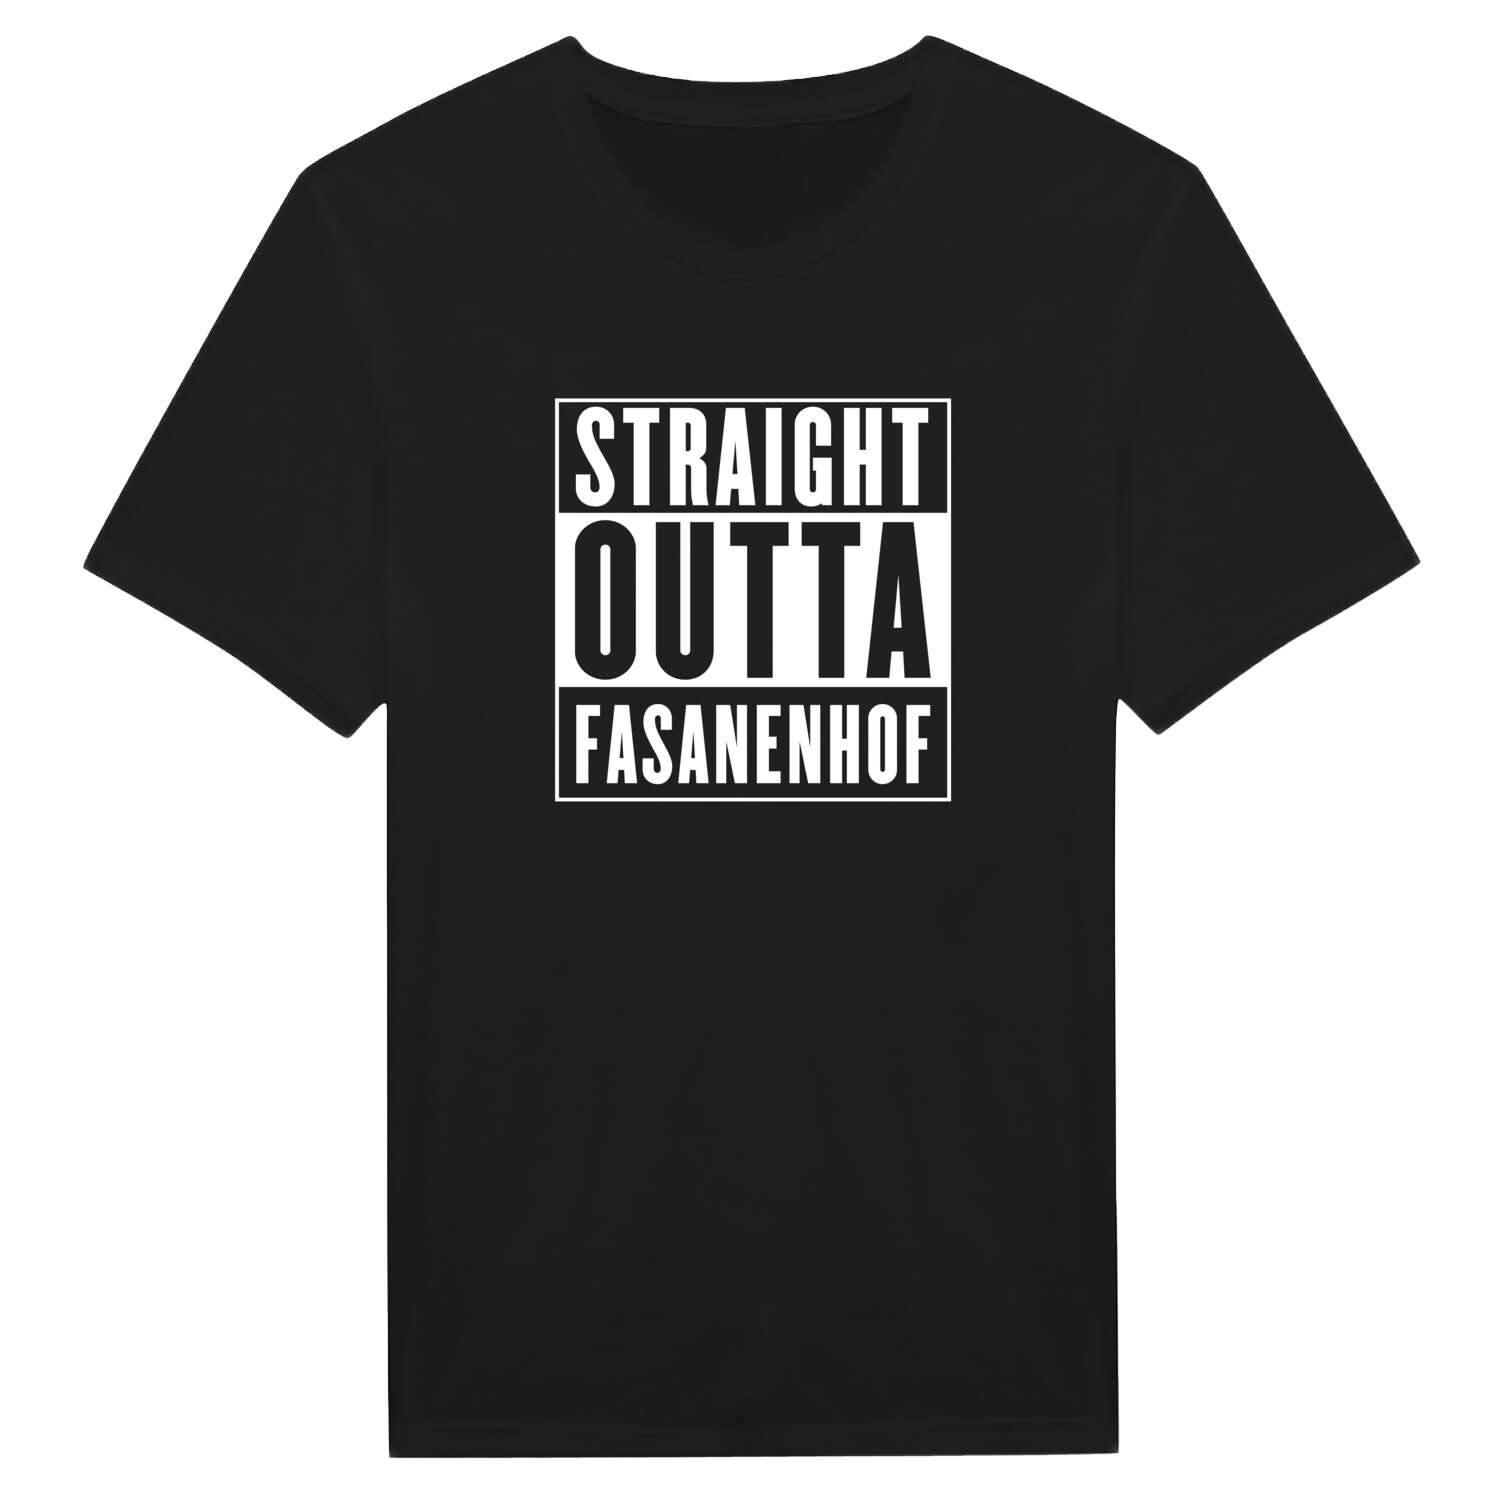 Fasanenhof T-Shirt »Straight Outta«